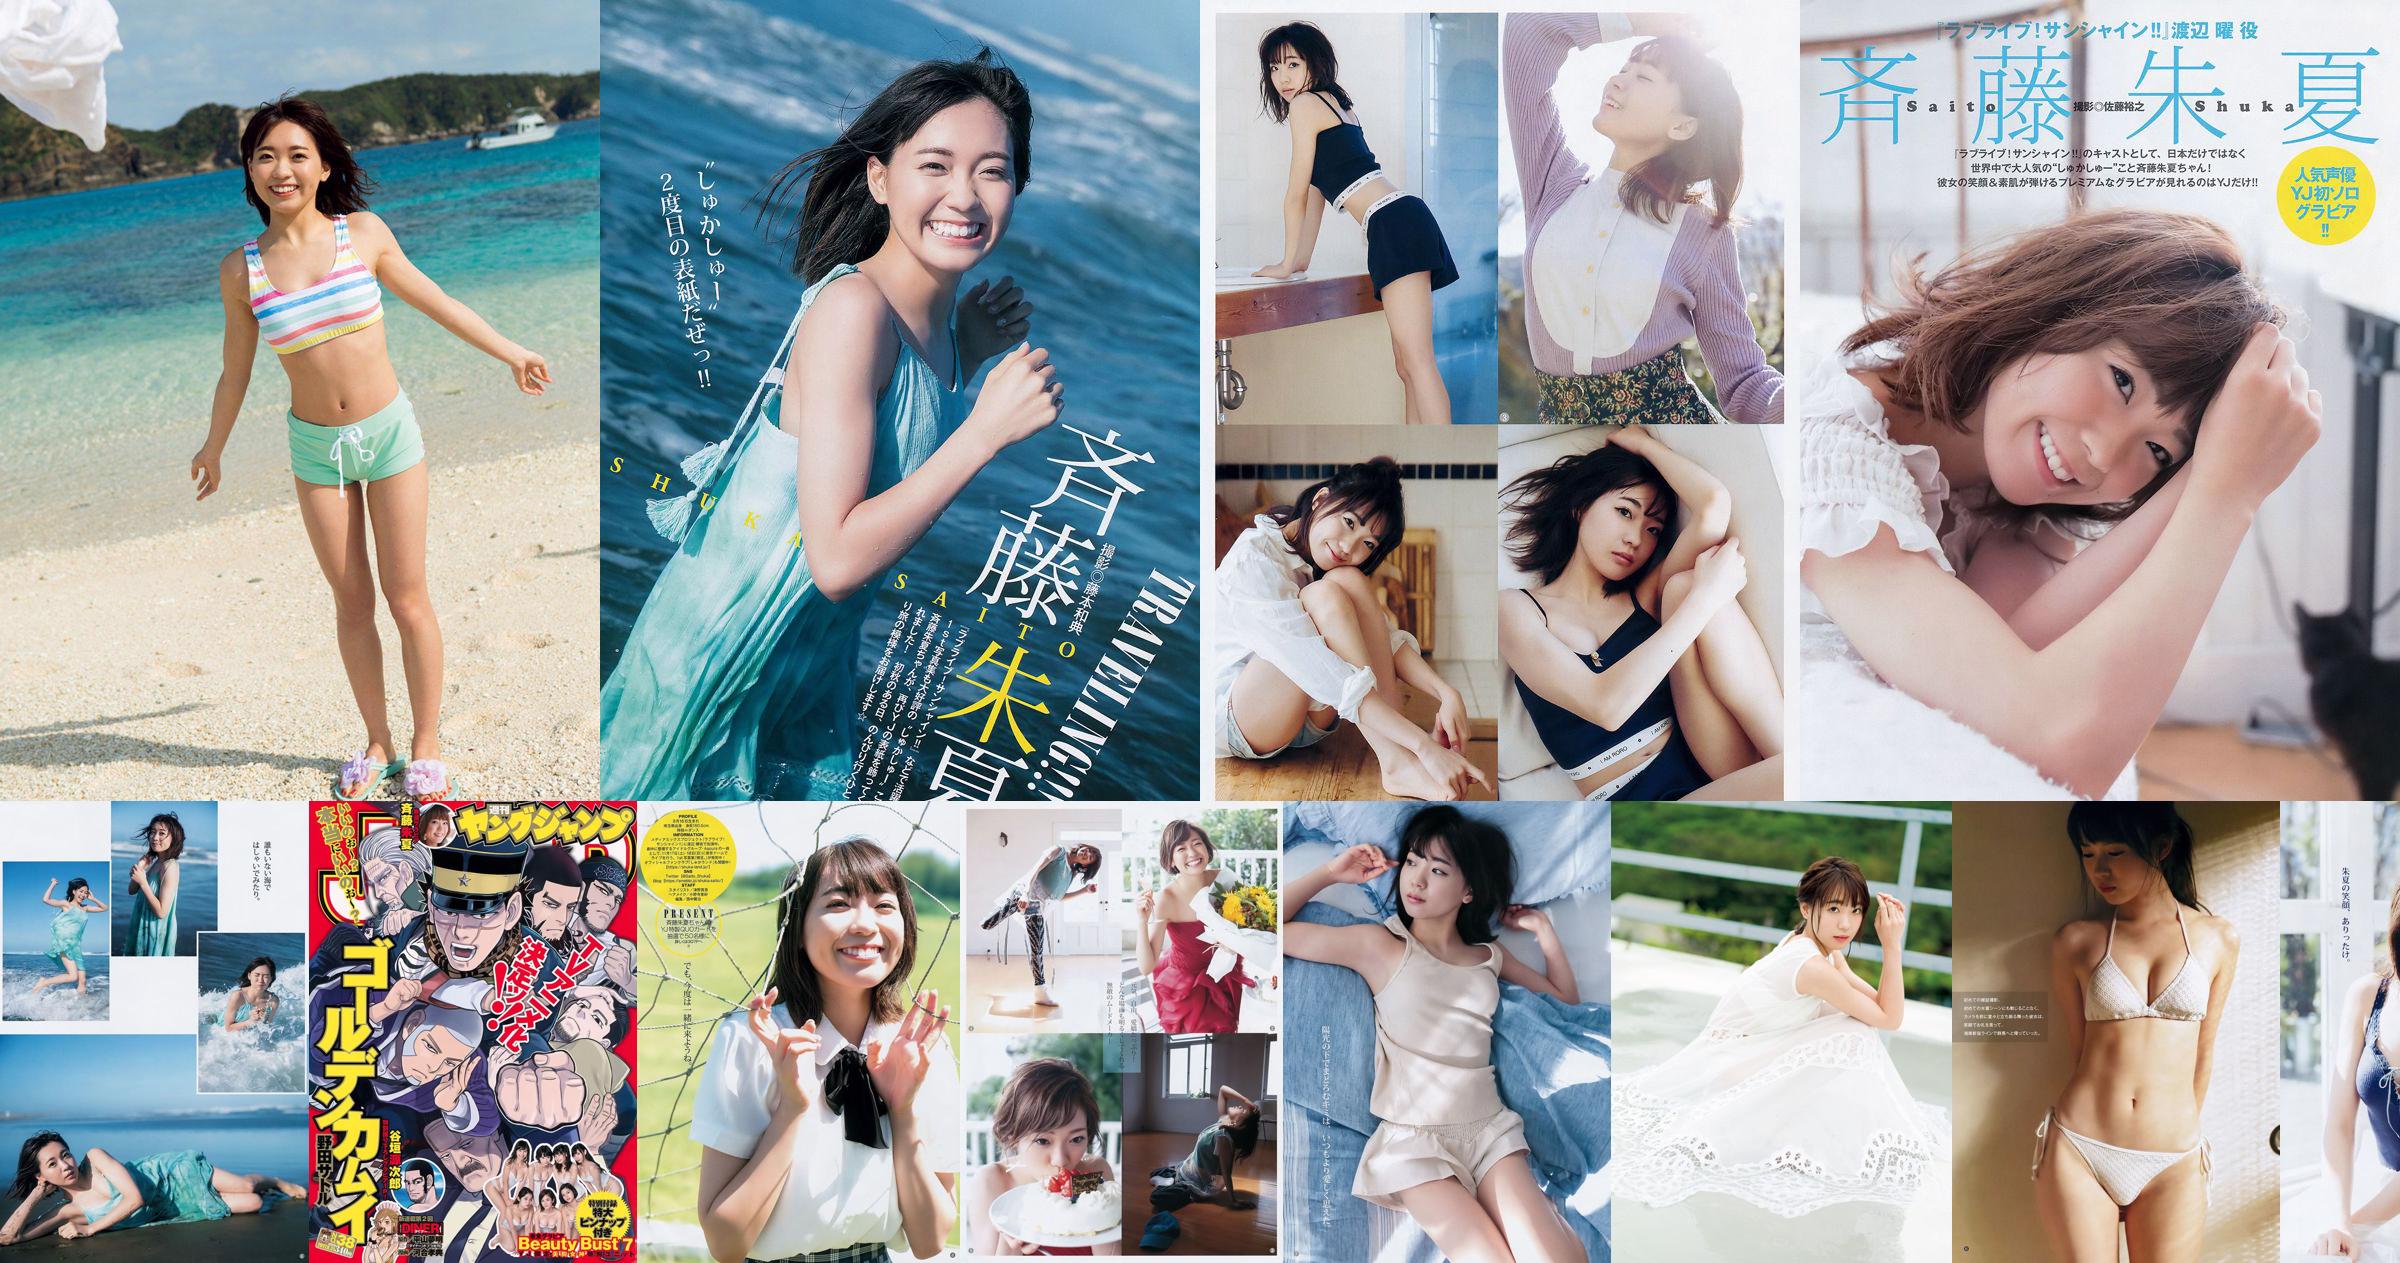 사이토 슈카 Beauty Bust 7 [Weekly Young Jump] 2017년 No.38 사진 기시 No.61e651 페이지 2